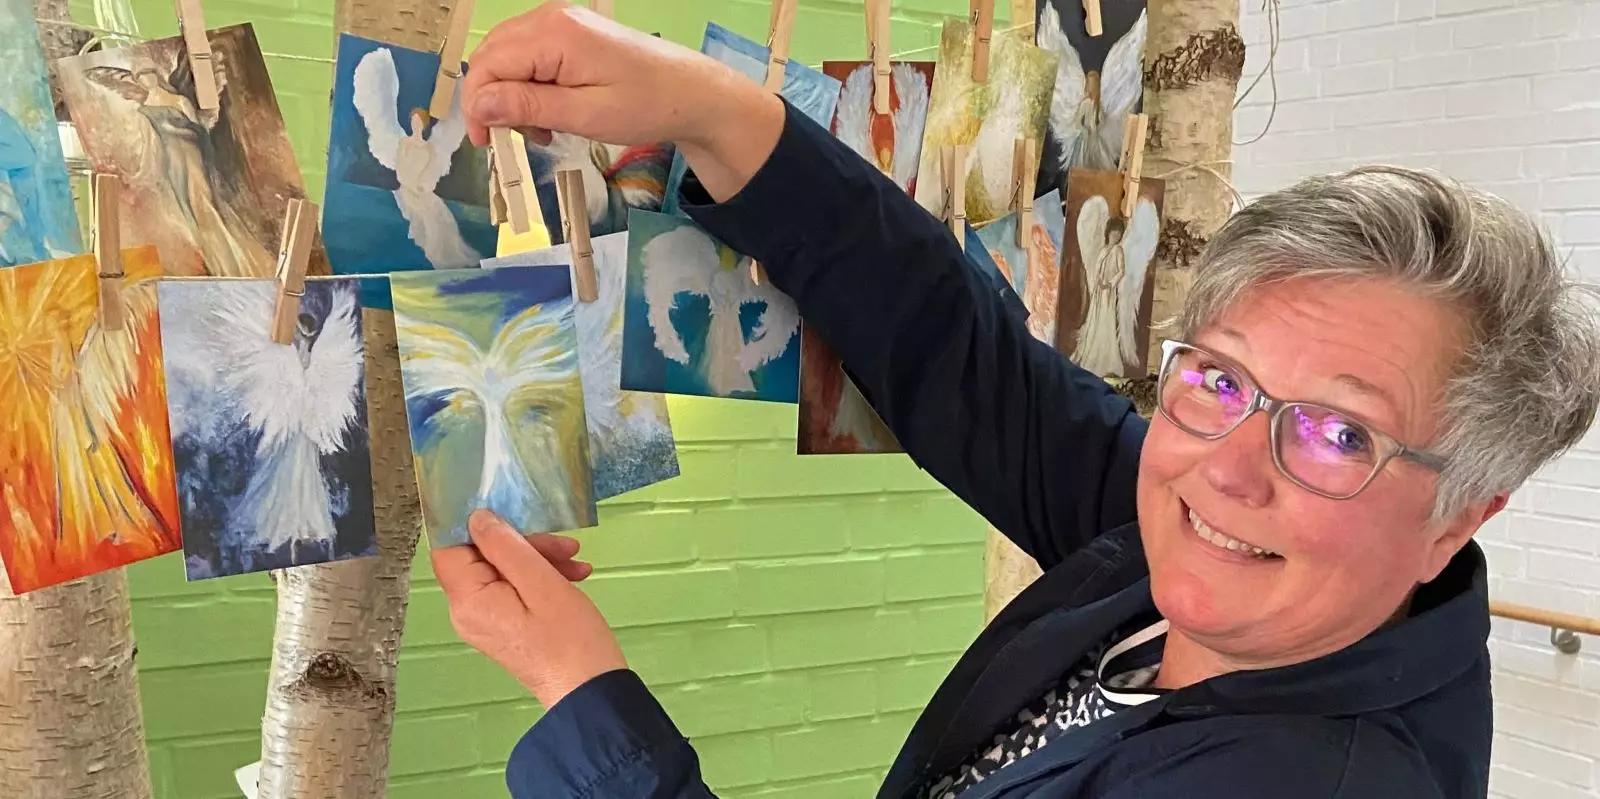 Hospizleiterin Britta True zeigt die Engelkarten. Einzelne Motive können gegen eine individuelle Spendensumme ab sofort gekauft werden.Foto: DRK Harburg/Stefani Thomson